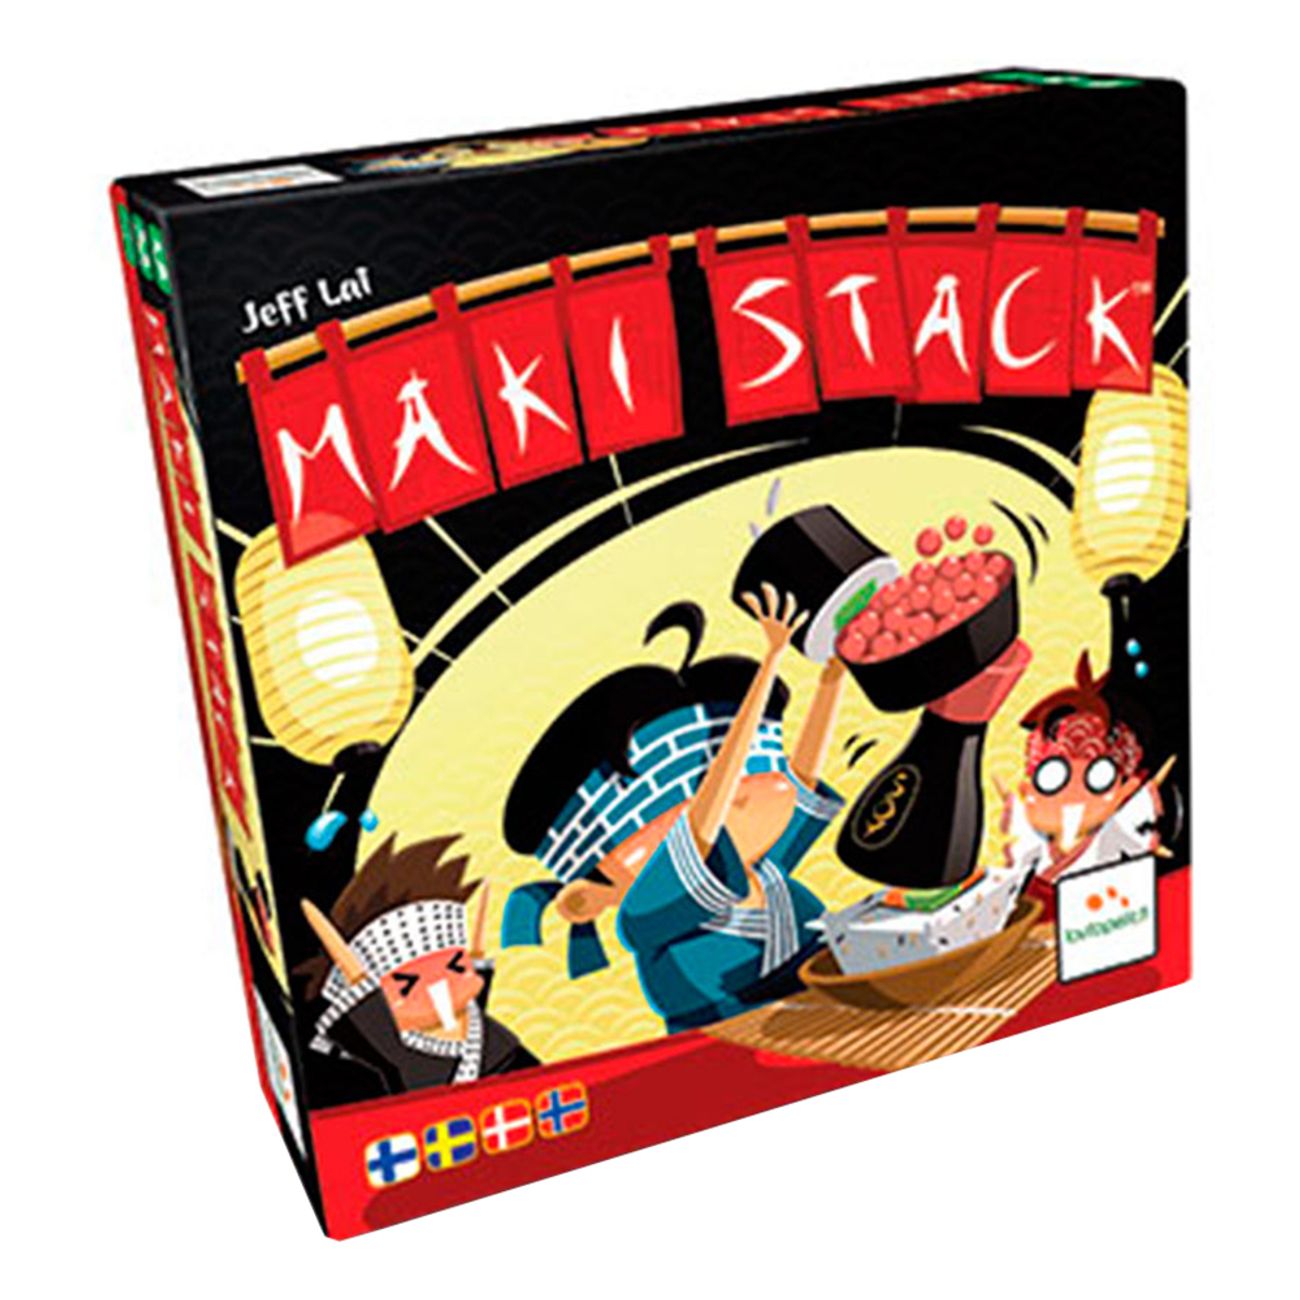 maki-stack-spel-3